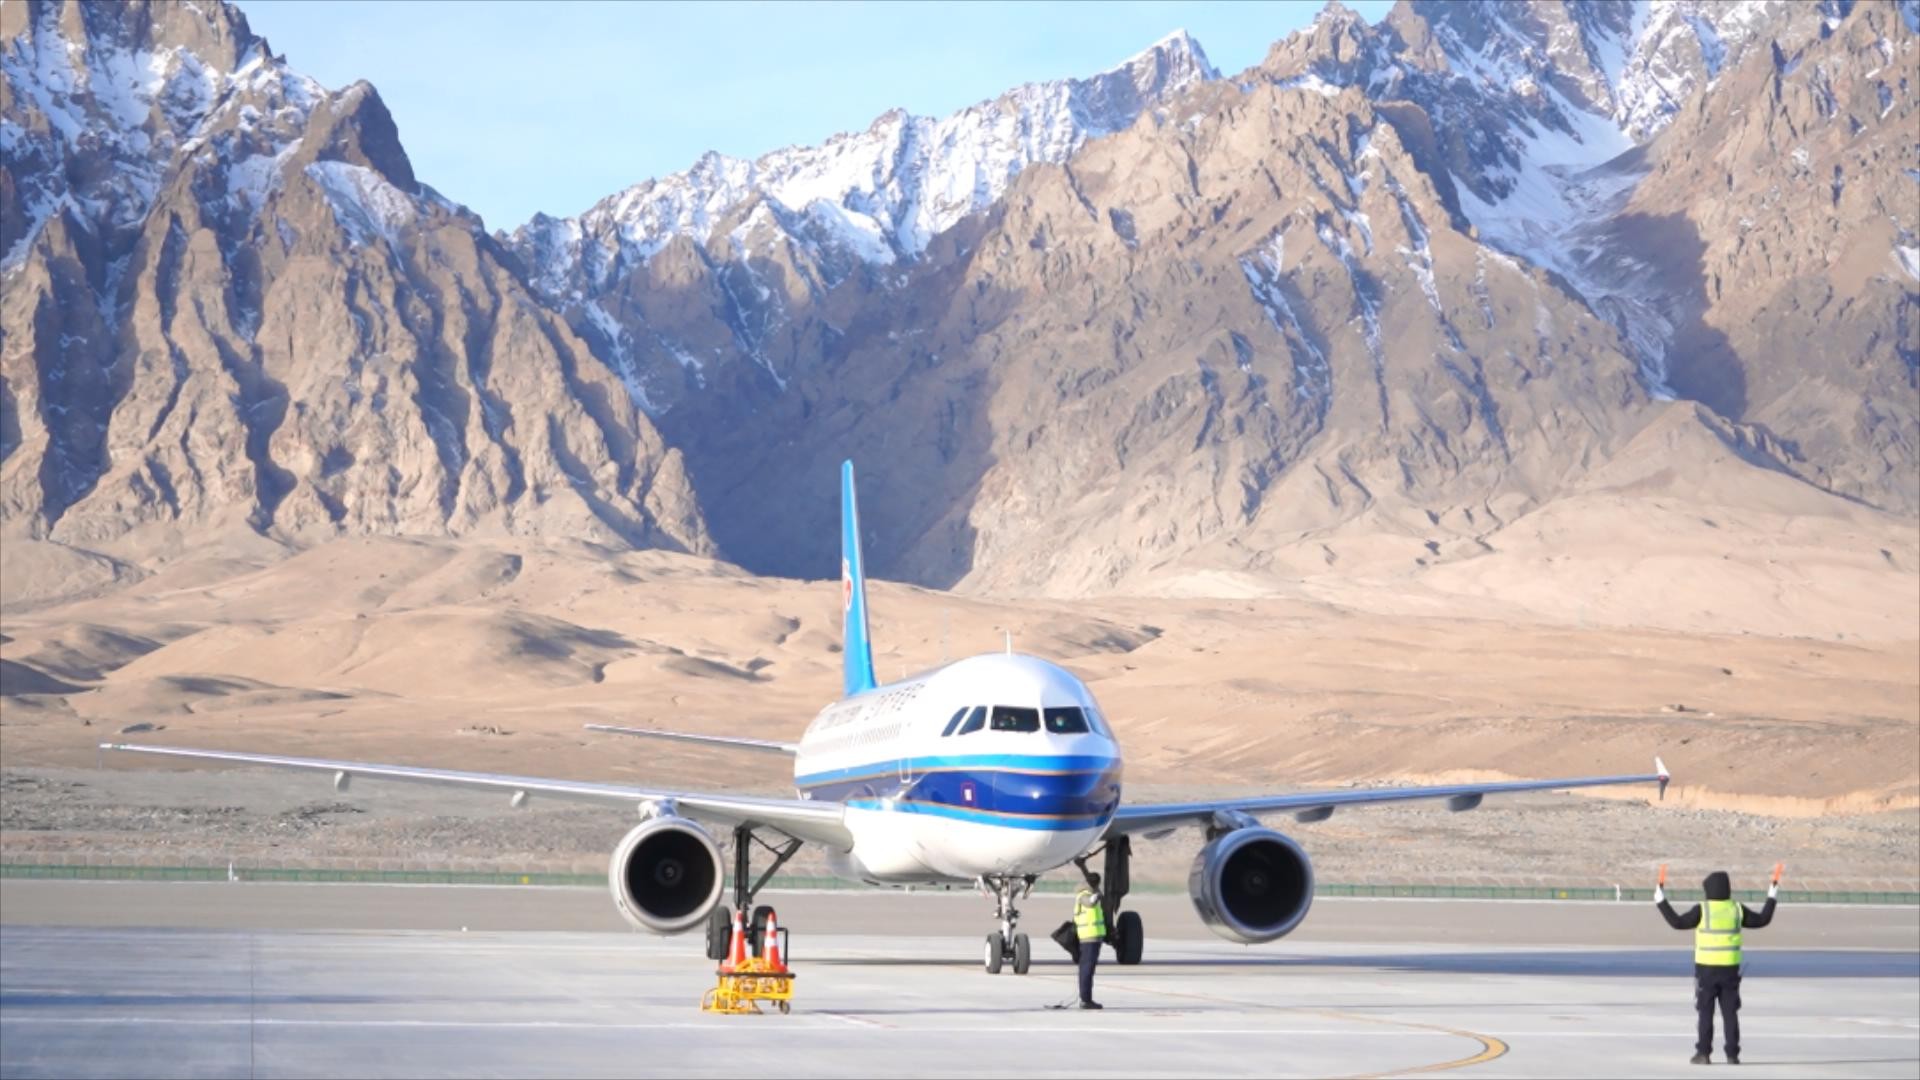 銀燕飛臨帕米爾高原  喀什旅游業迎來騰飛新機遇